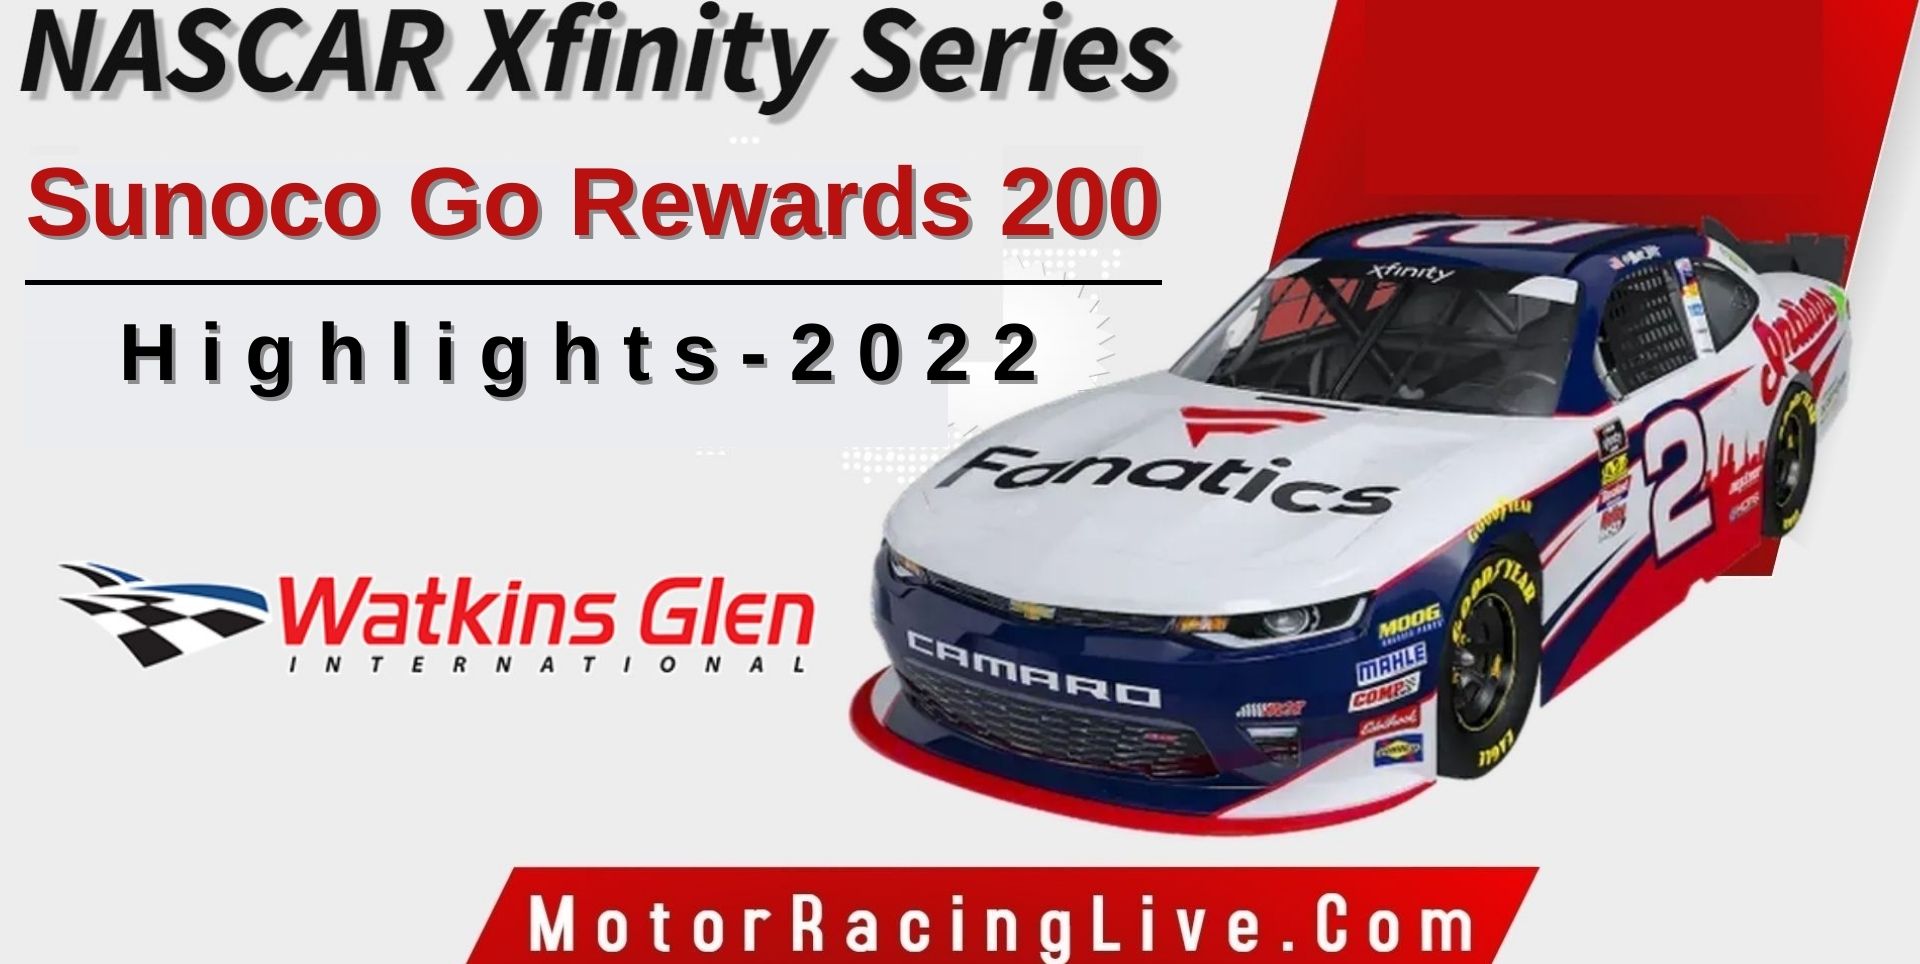 Sunoco Go Rewards 200 Highlights 2022 NASCAR Xfinity